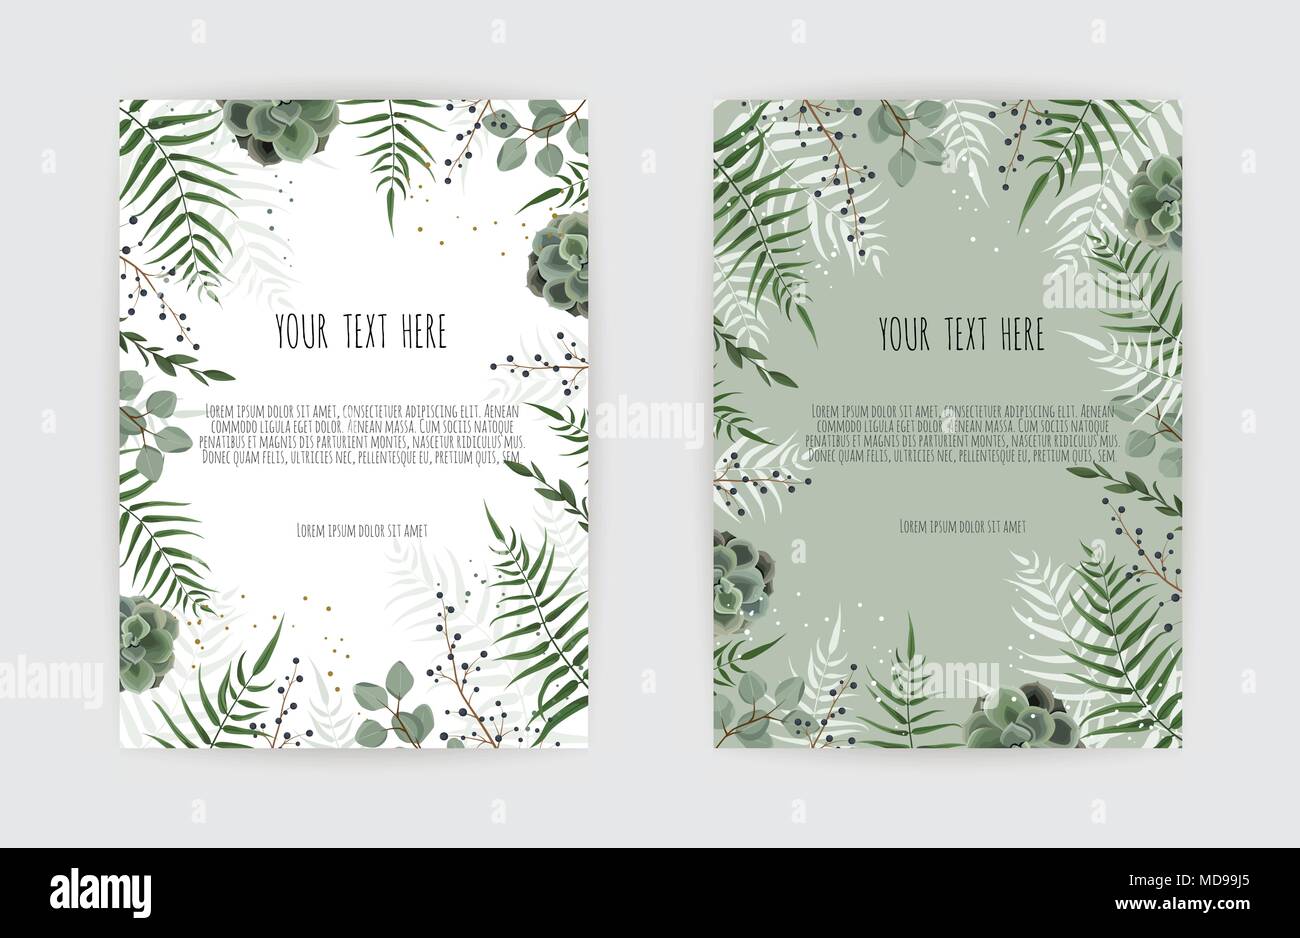 Jeu de carte avec feuille verte , des branches d'eucalyptus, de décoration floral frame pattern. Poster Floral. Illustration de Vecteur